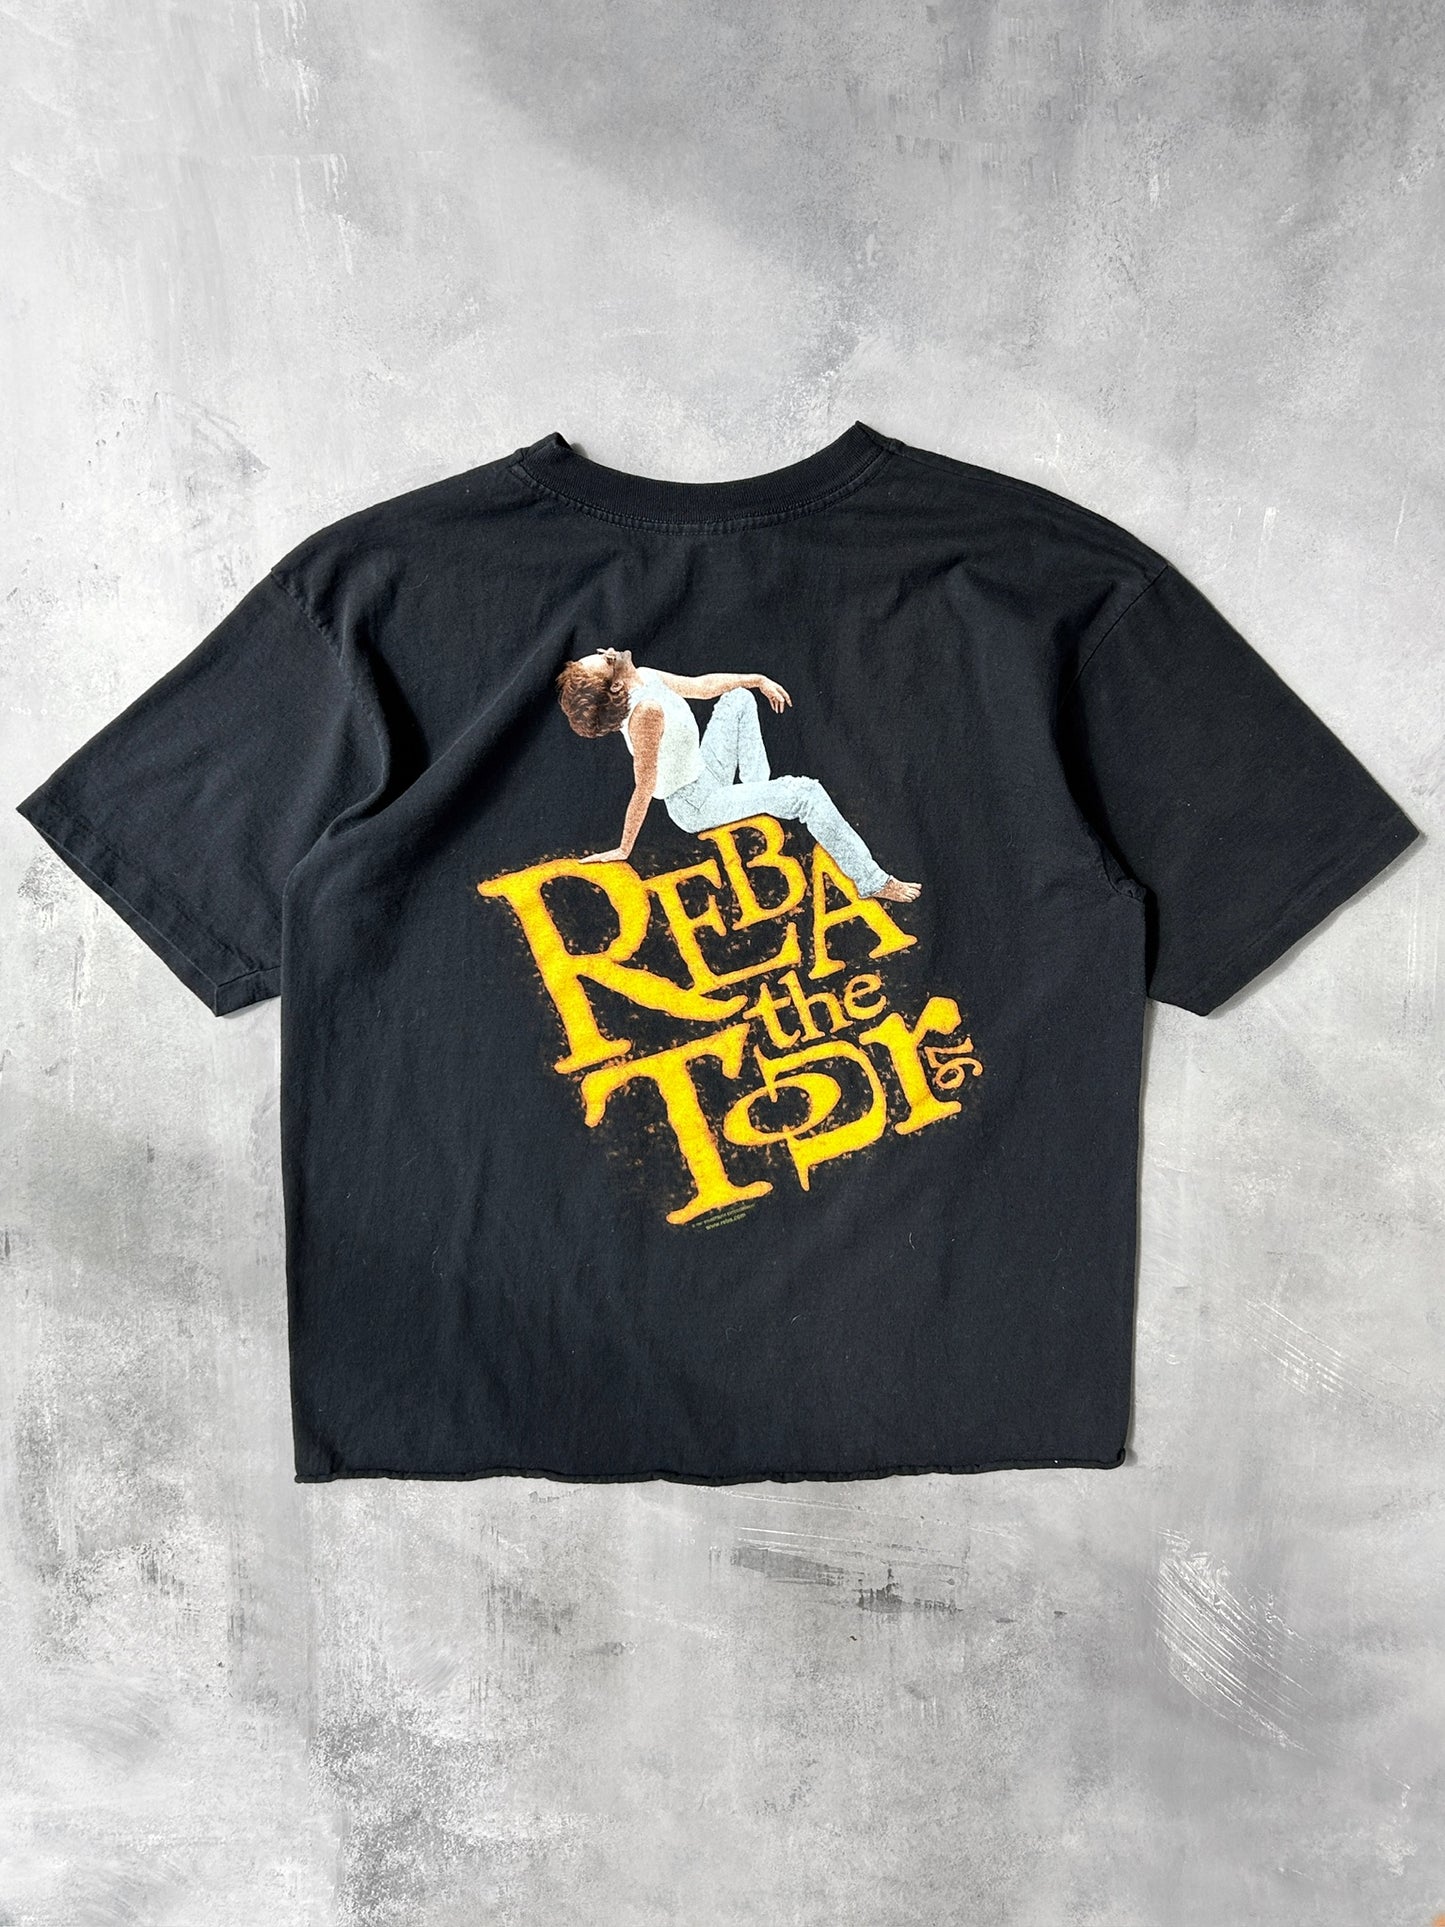 Reba Tour T-Shirt '97 - XL